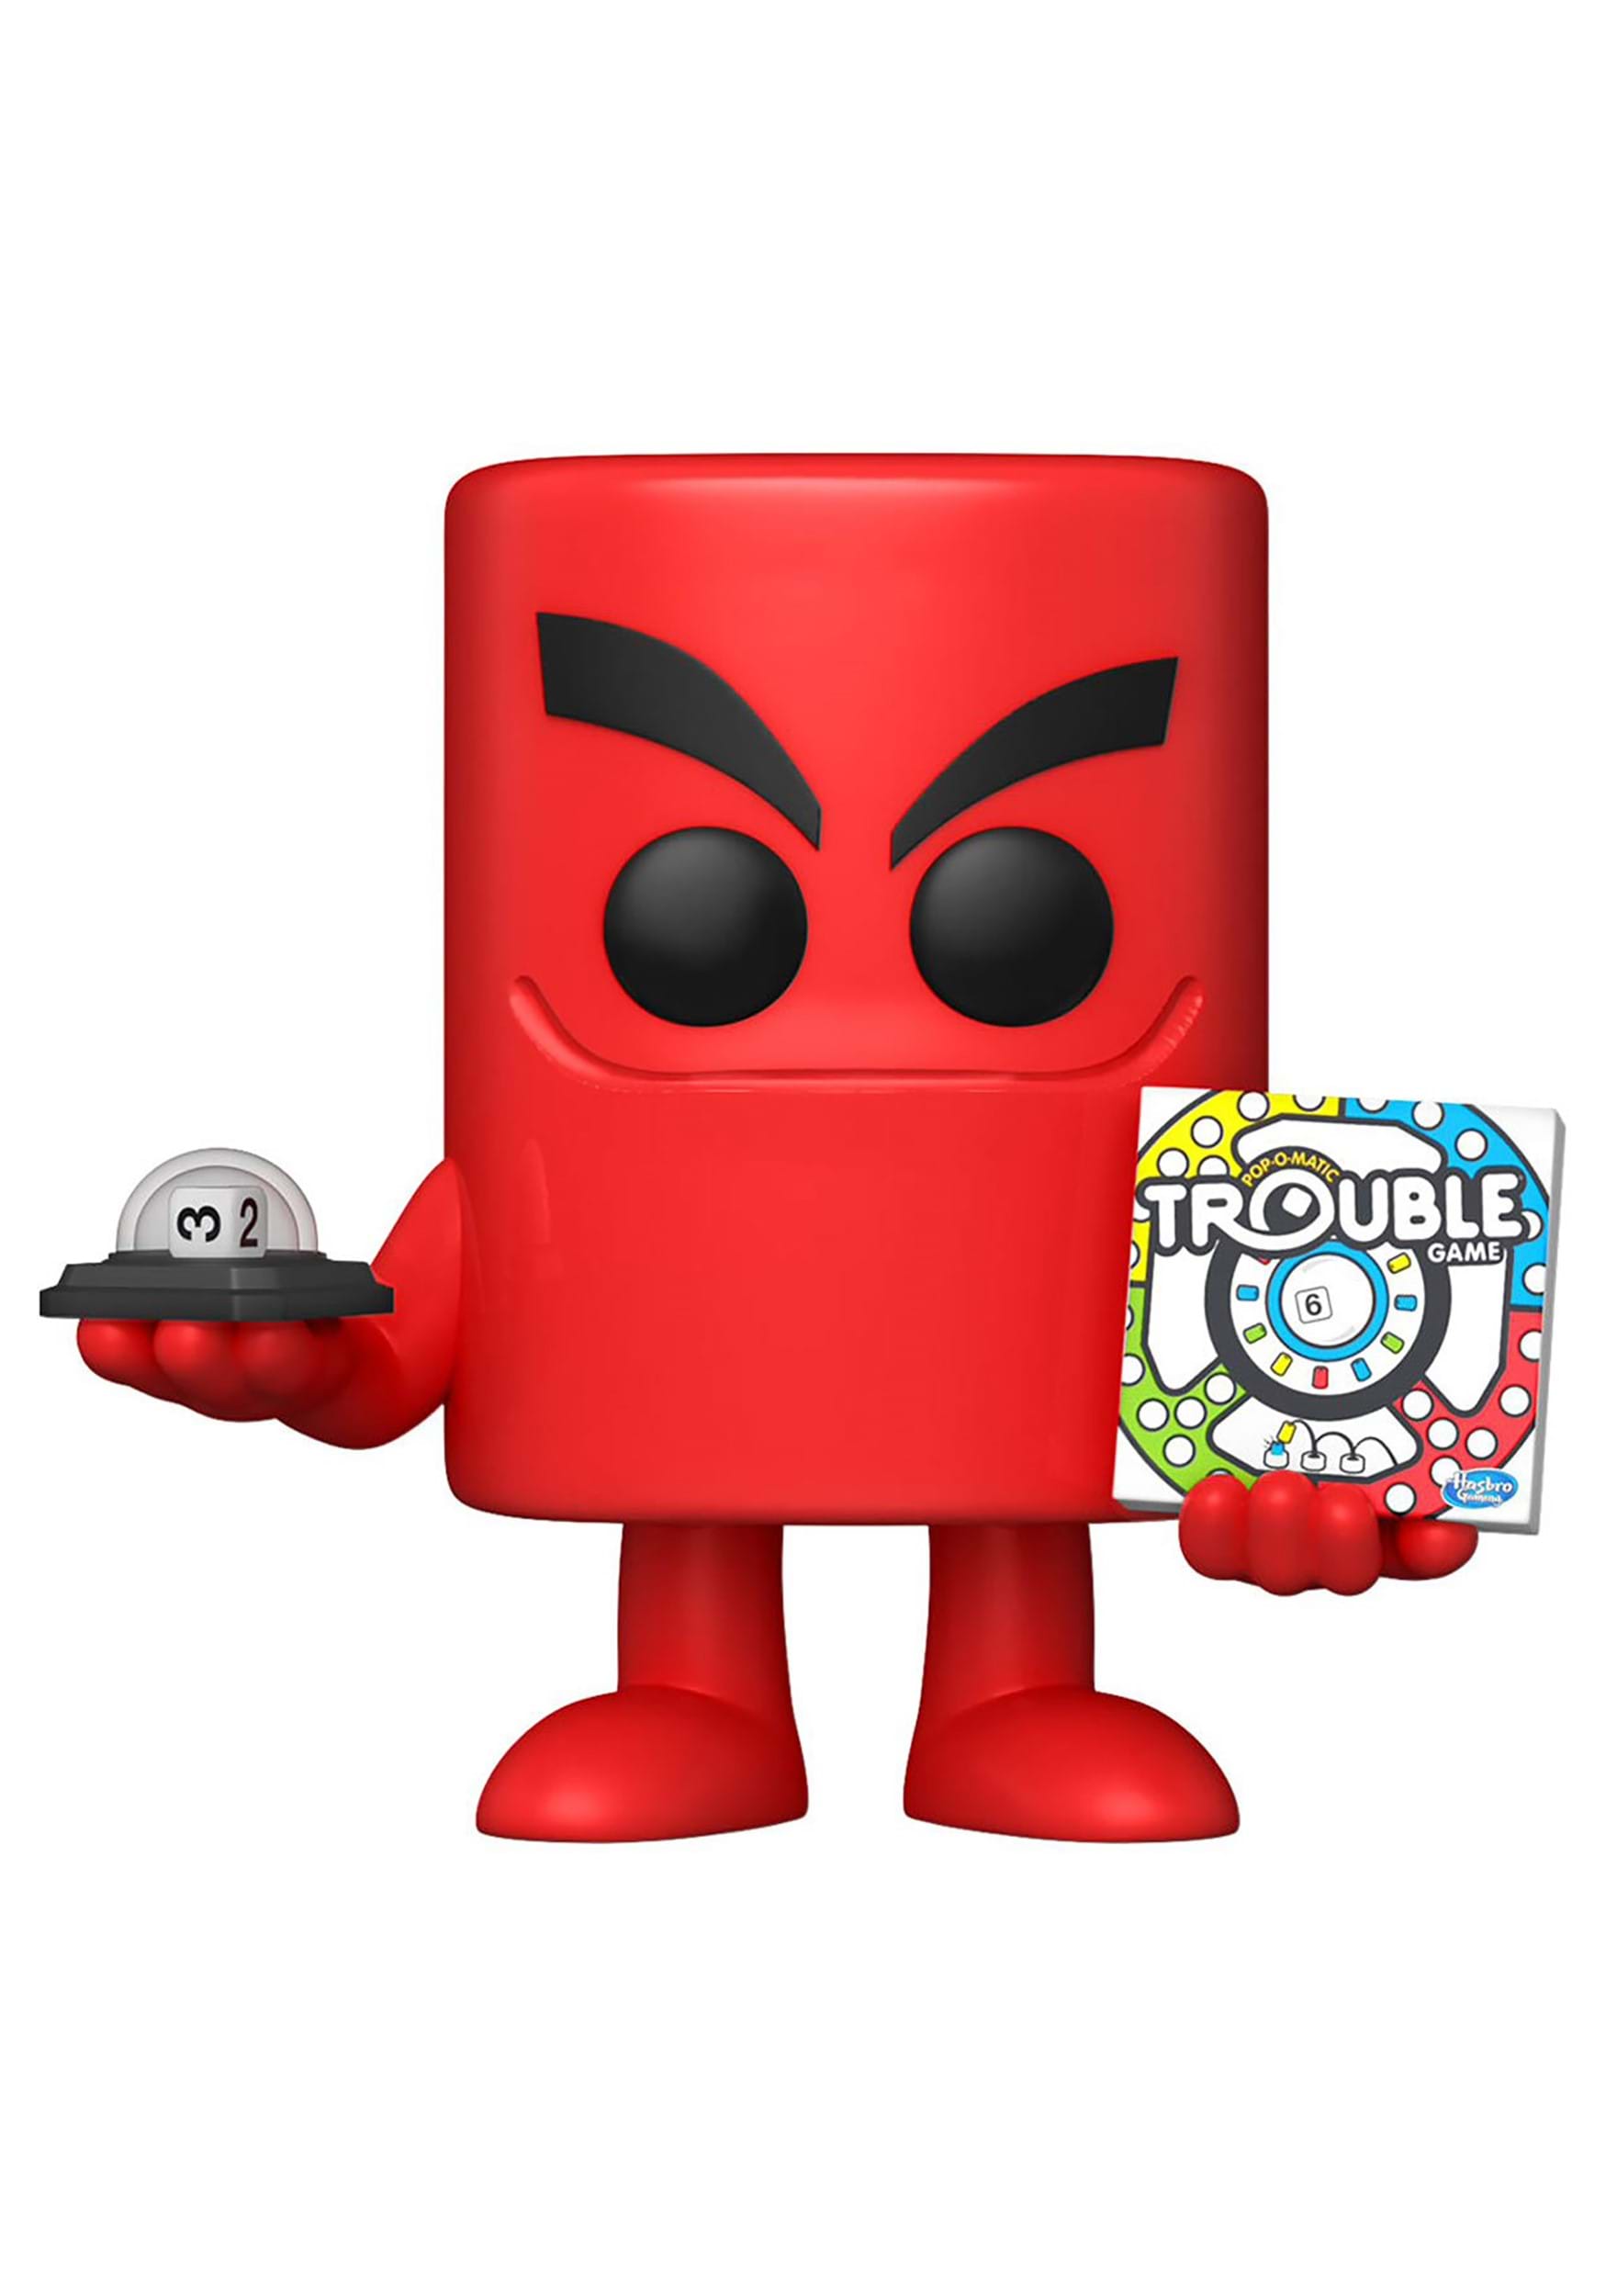 Funko POP Vinyl: Trouble- Trouble Board Figure